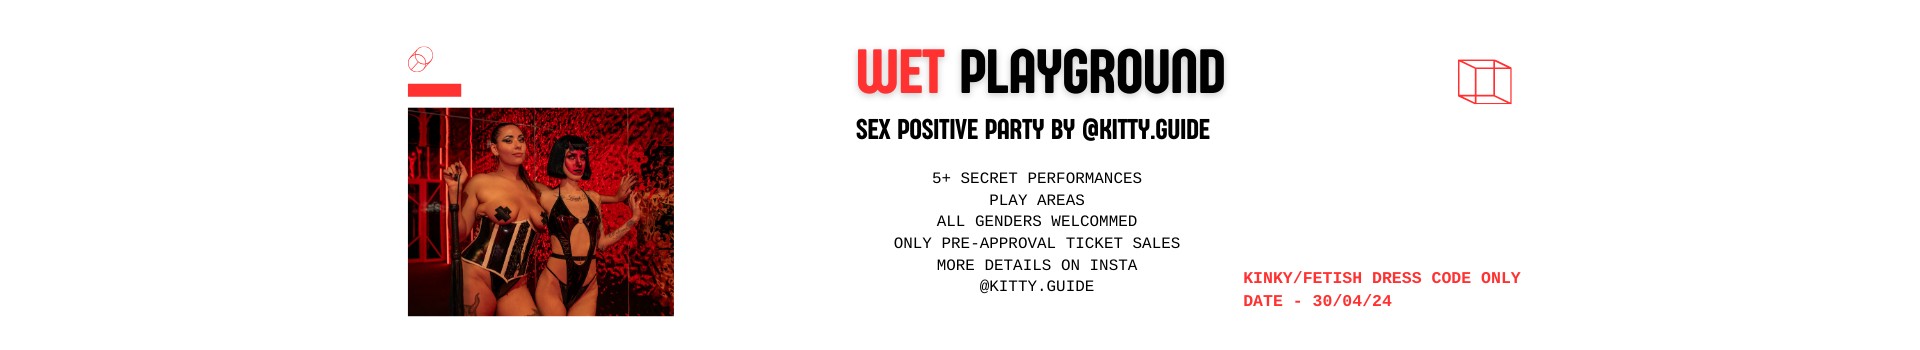 Wet Playground